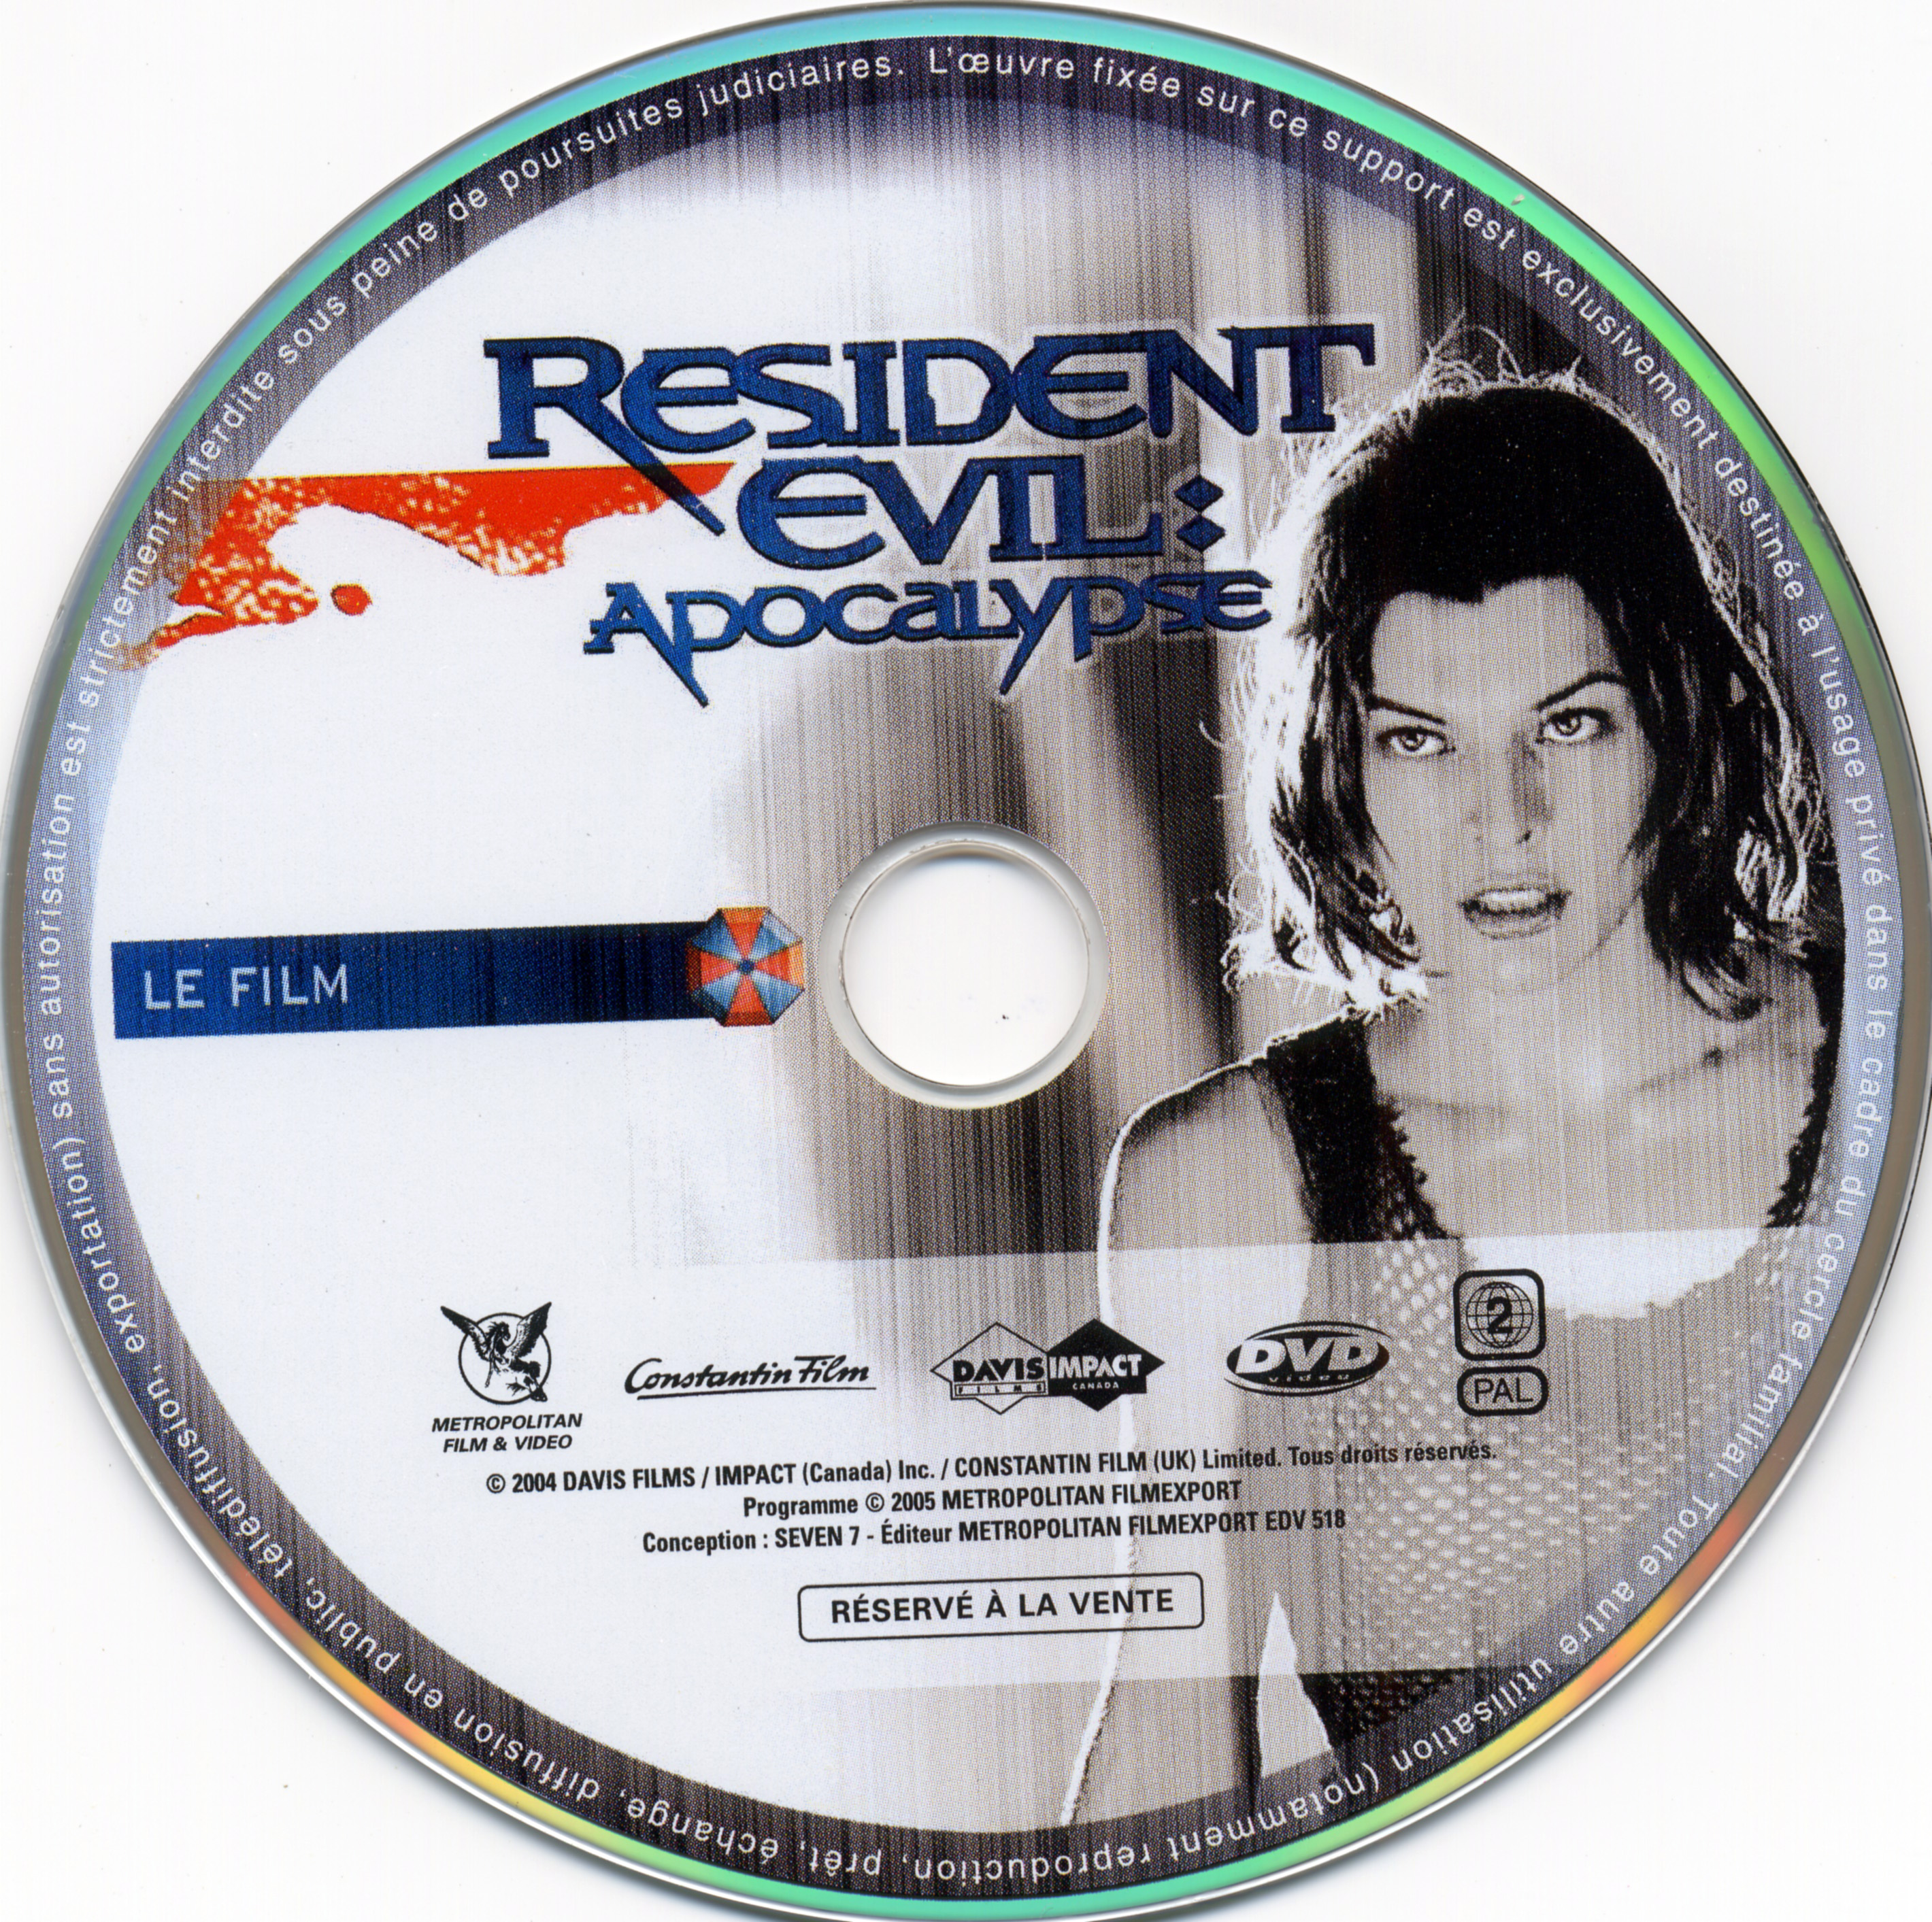 Resident evil apocalypse DISC 1